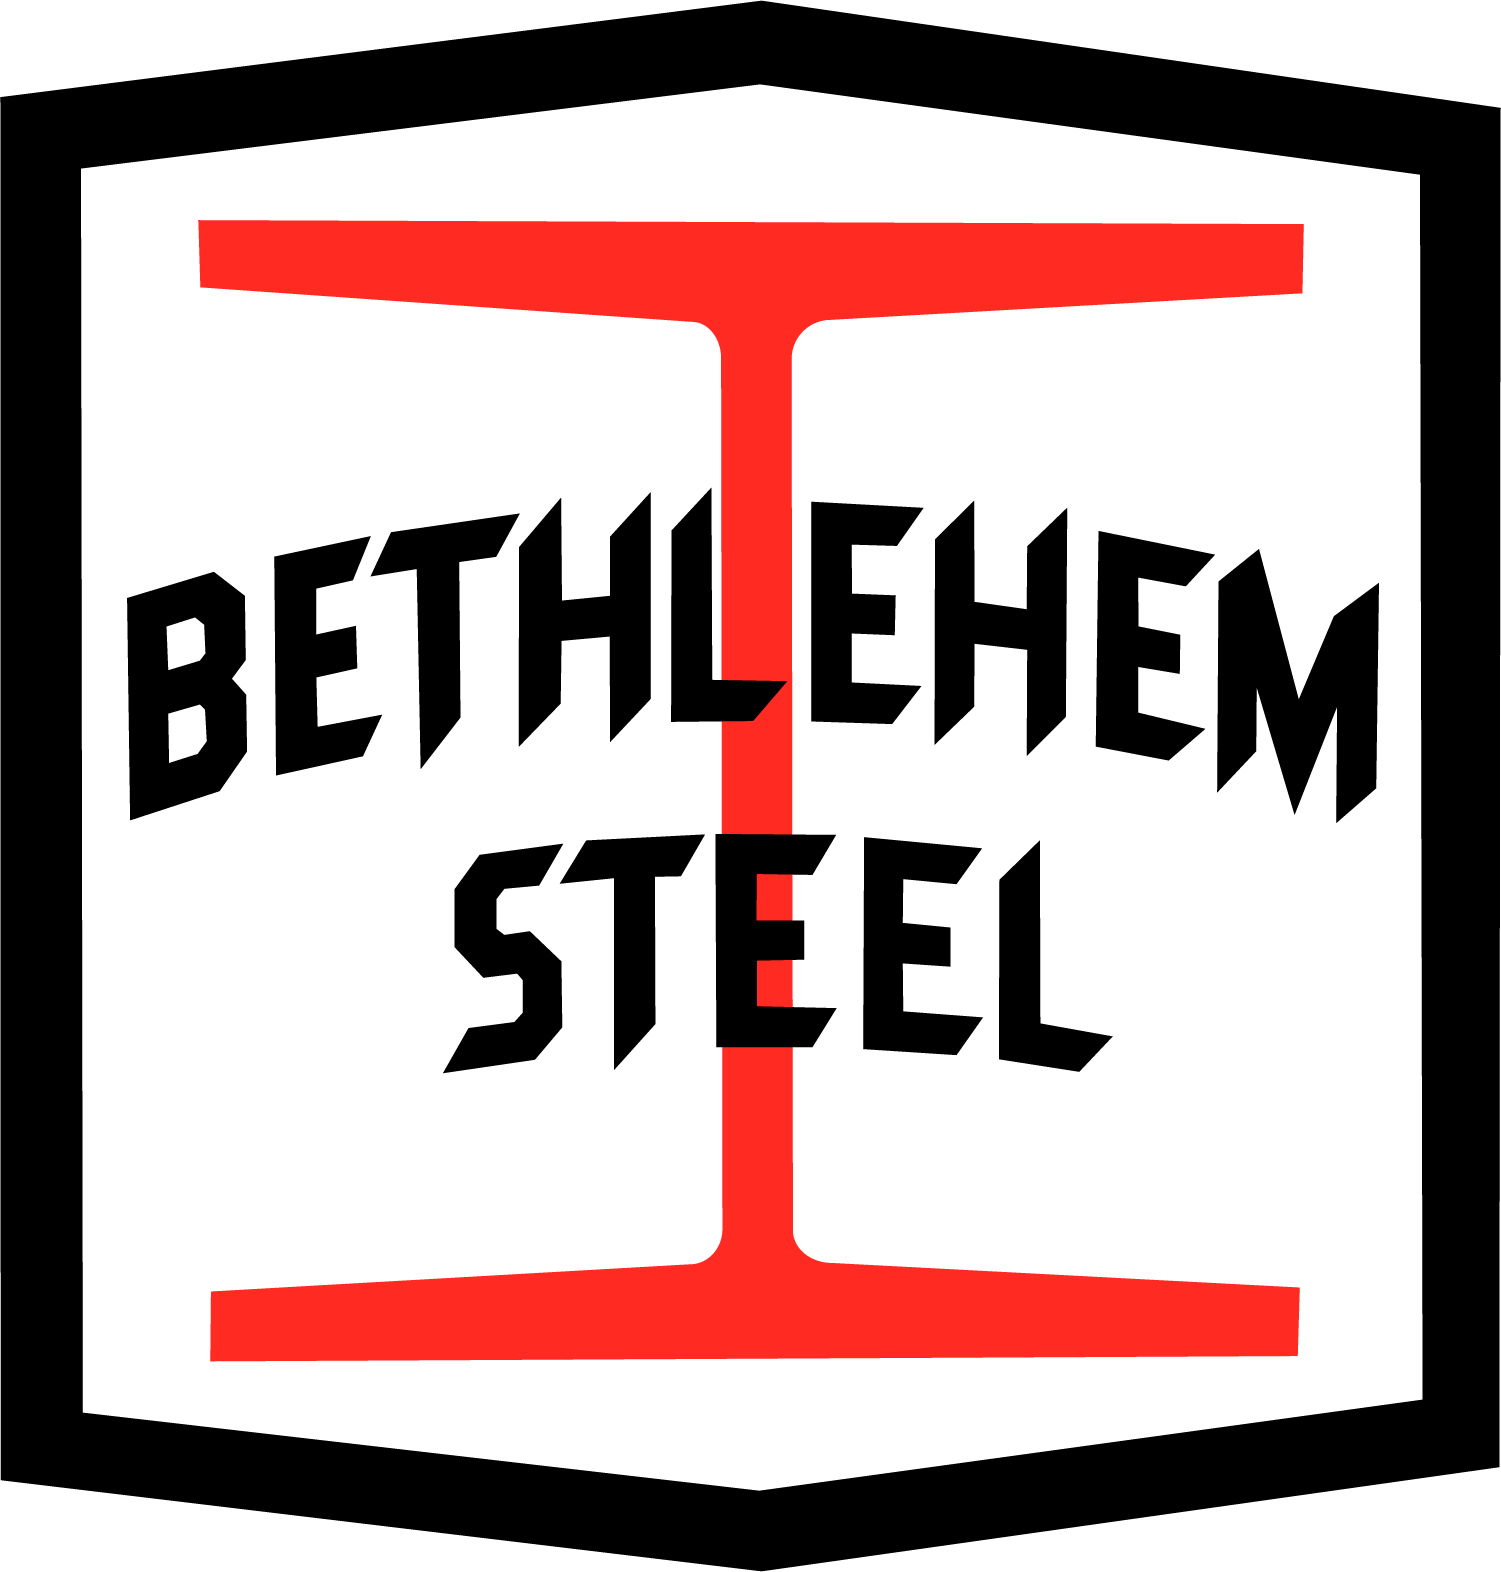 I-Beam Logo - Bethlehem Steel I-Beam Decal Set for the 52'-6